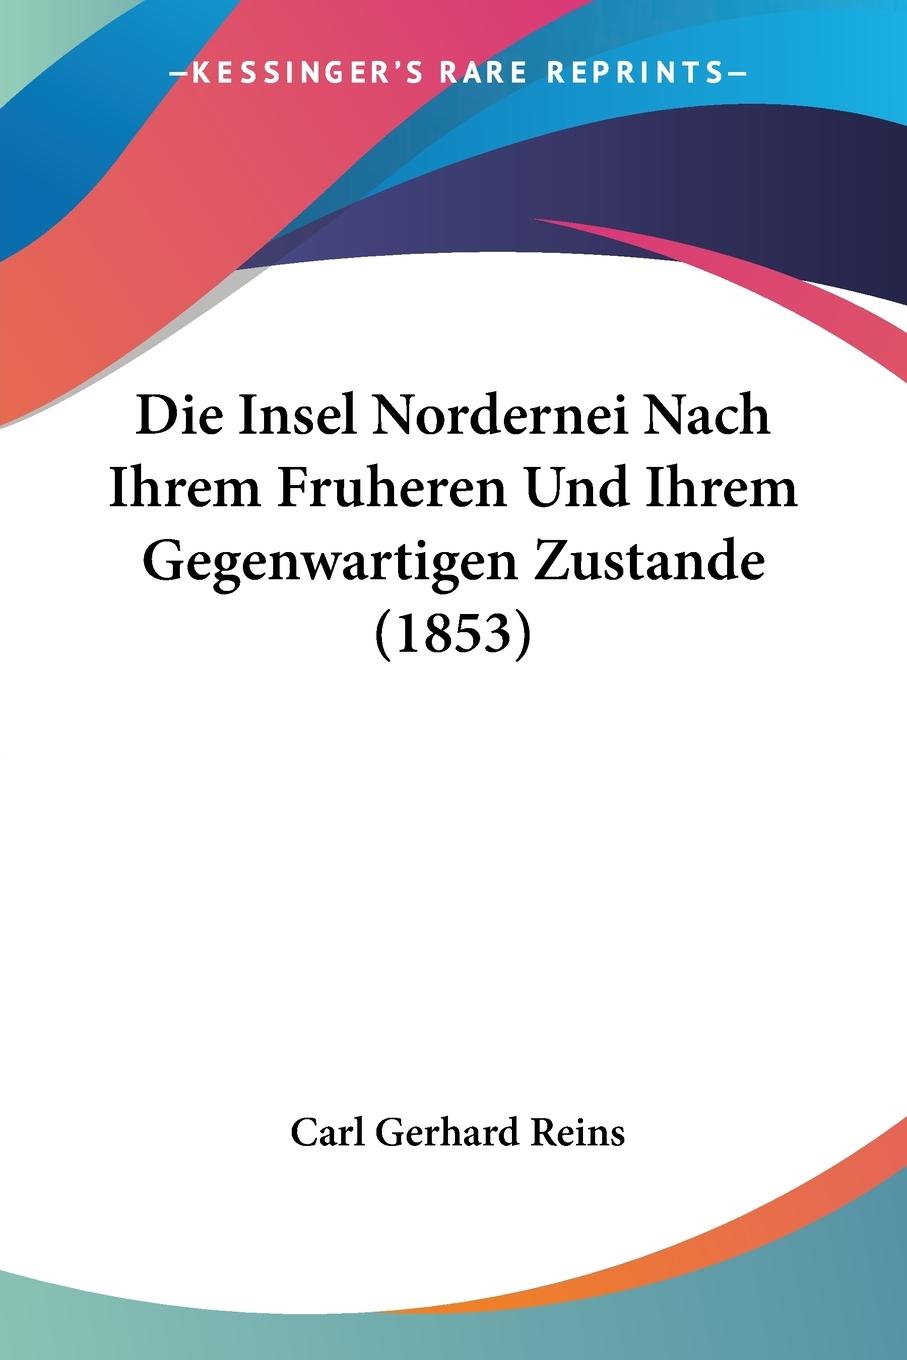 Die Insel Nordernei Nach Ihrem Fruheren Und Ihrem Gegenwartigen Zustande (1853) - Reins, Carl Gerhard